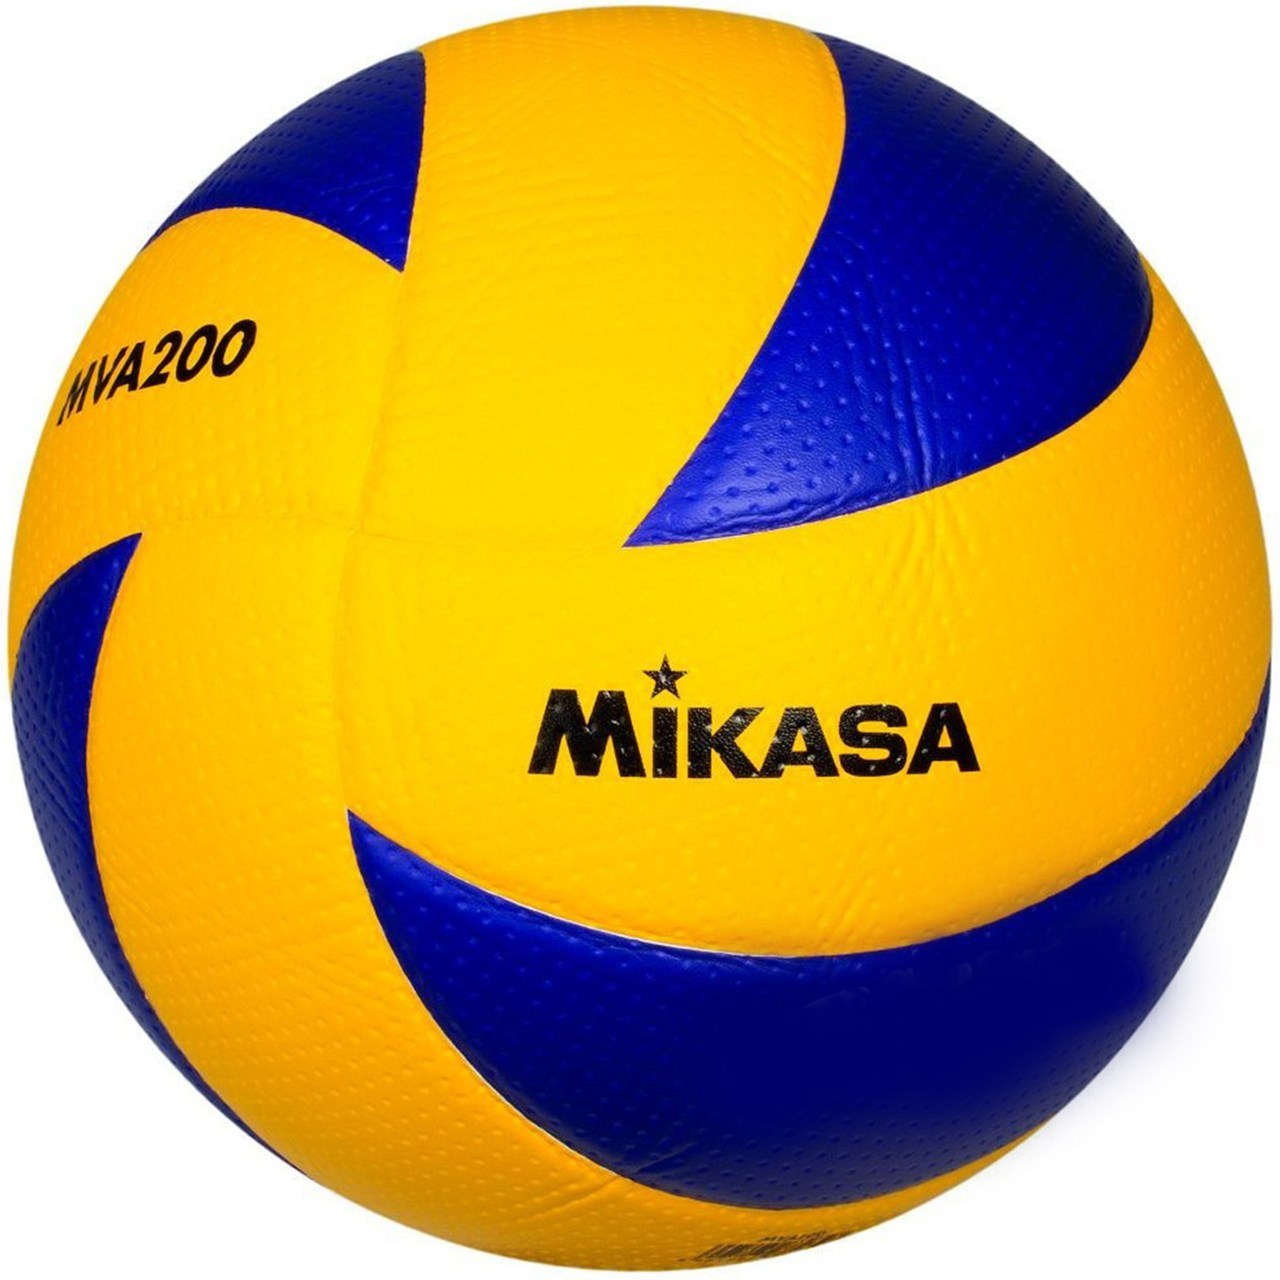 توپ والیبال میکاسا مدل MVA 200